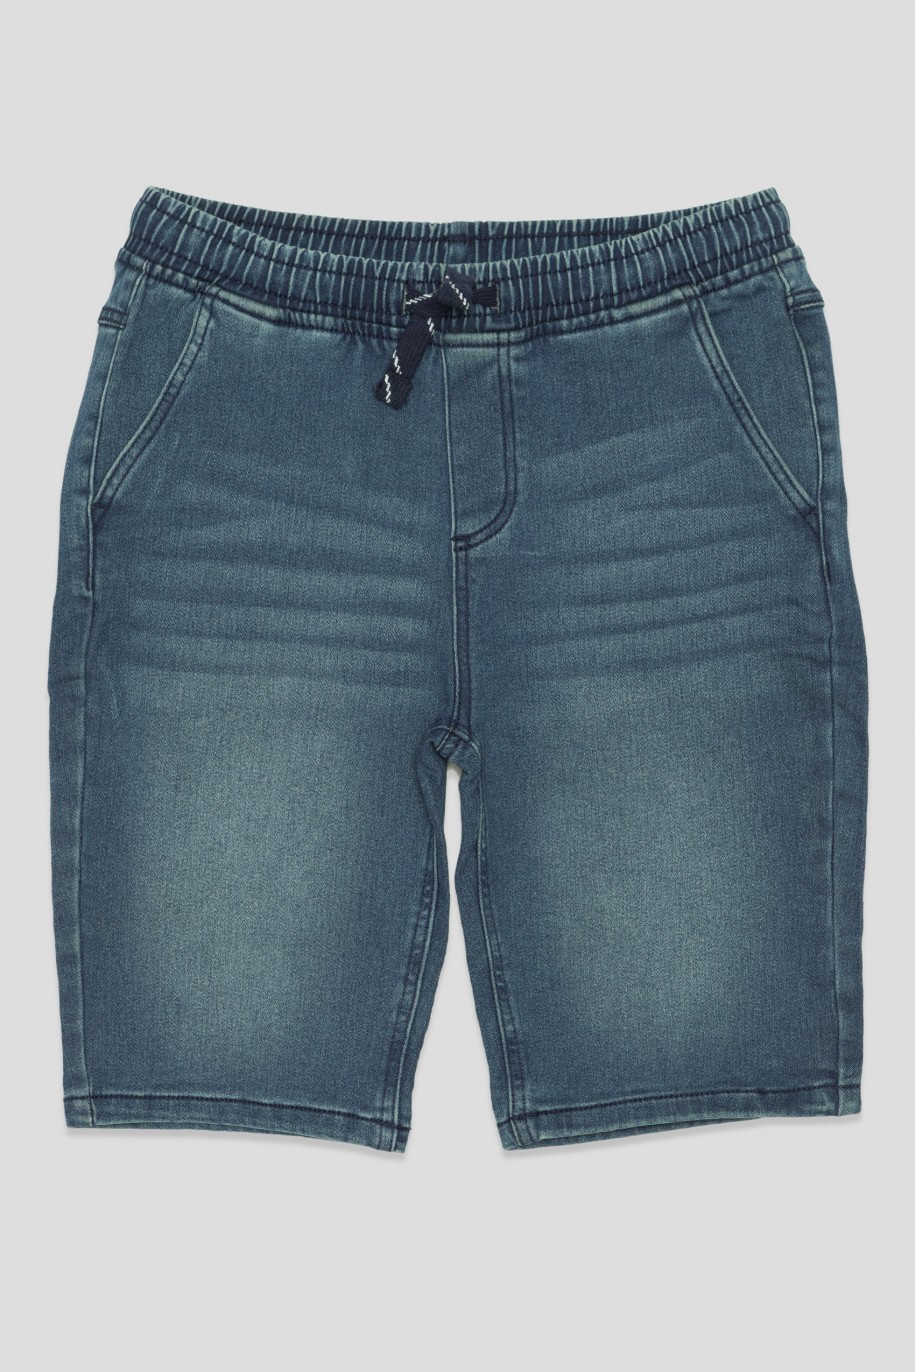 Krótkie niebieskie jeansowe spodenki dla chłopaka - 41207